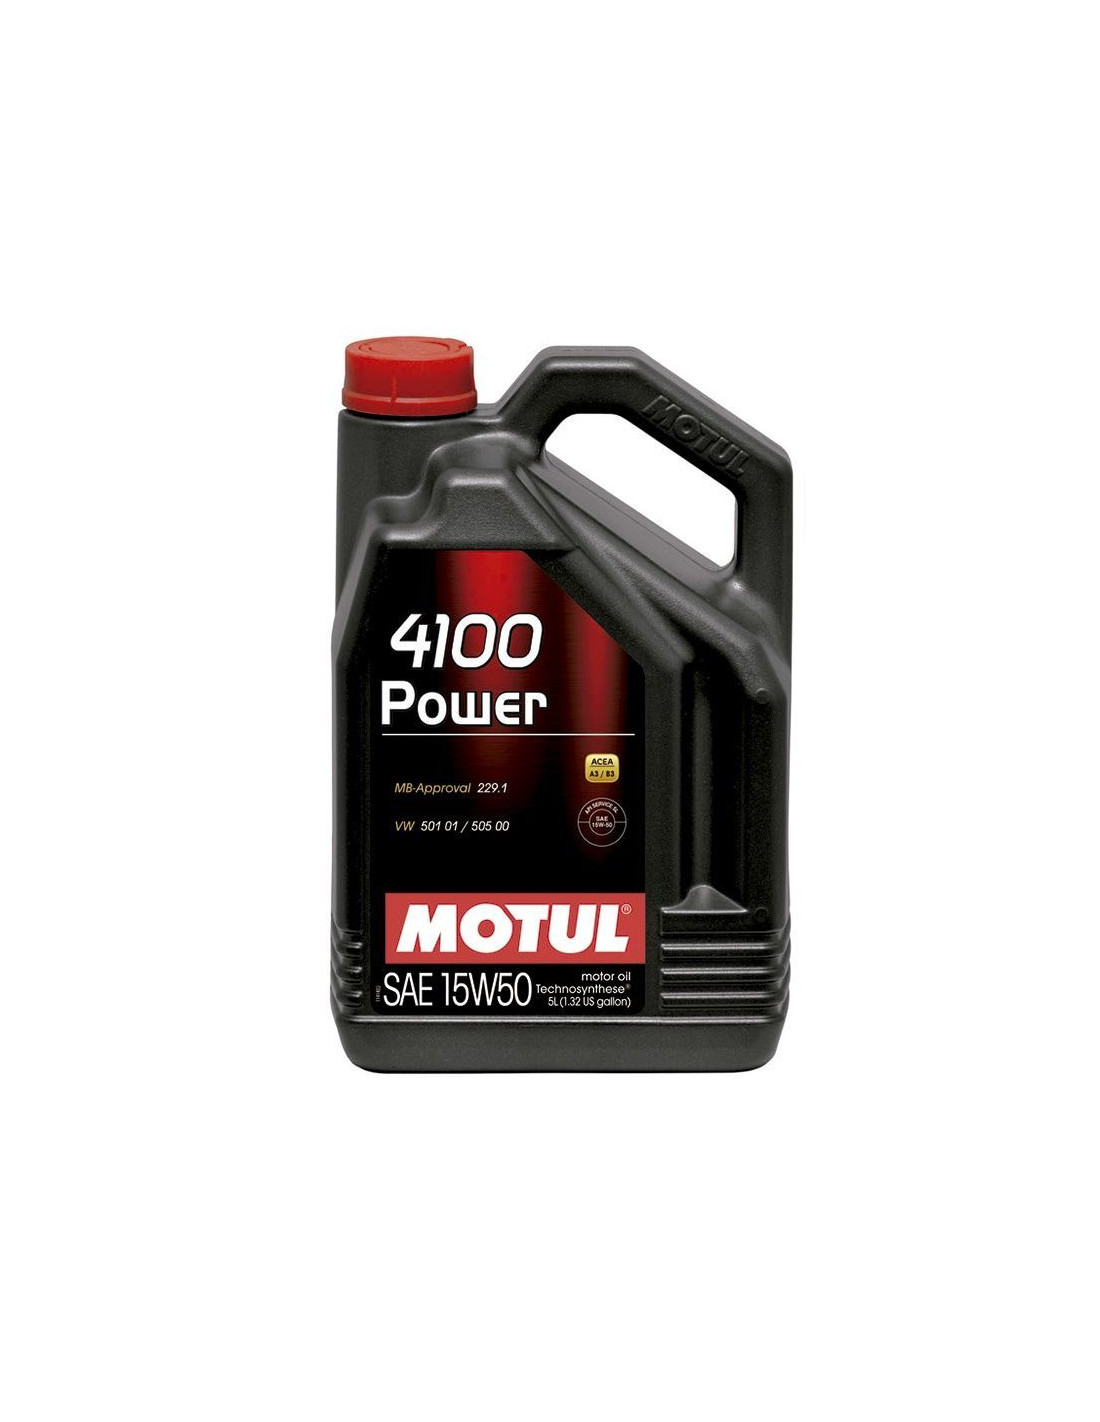 Comprar Motul 4100 Power 15W50 | Compralubricantes.com